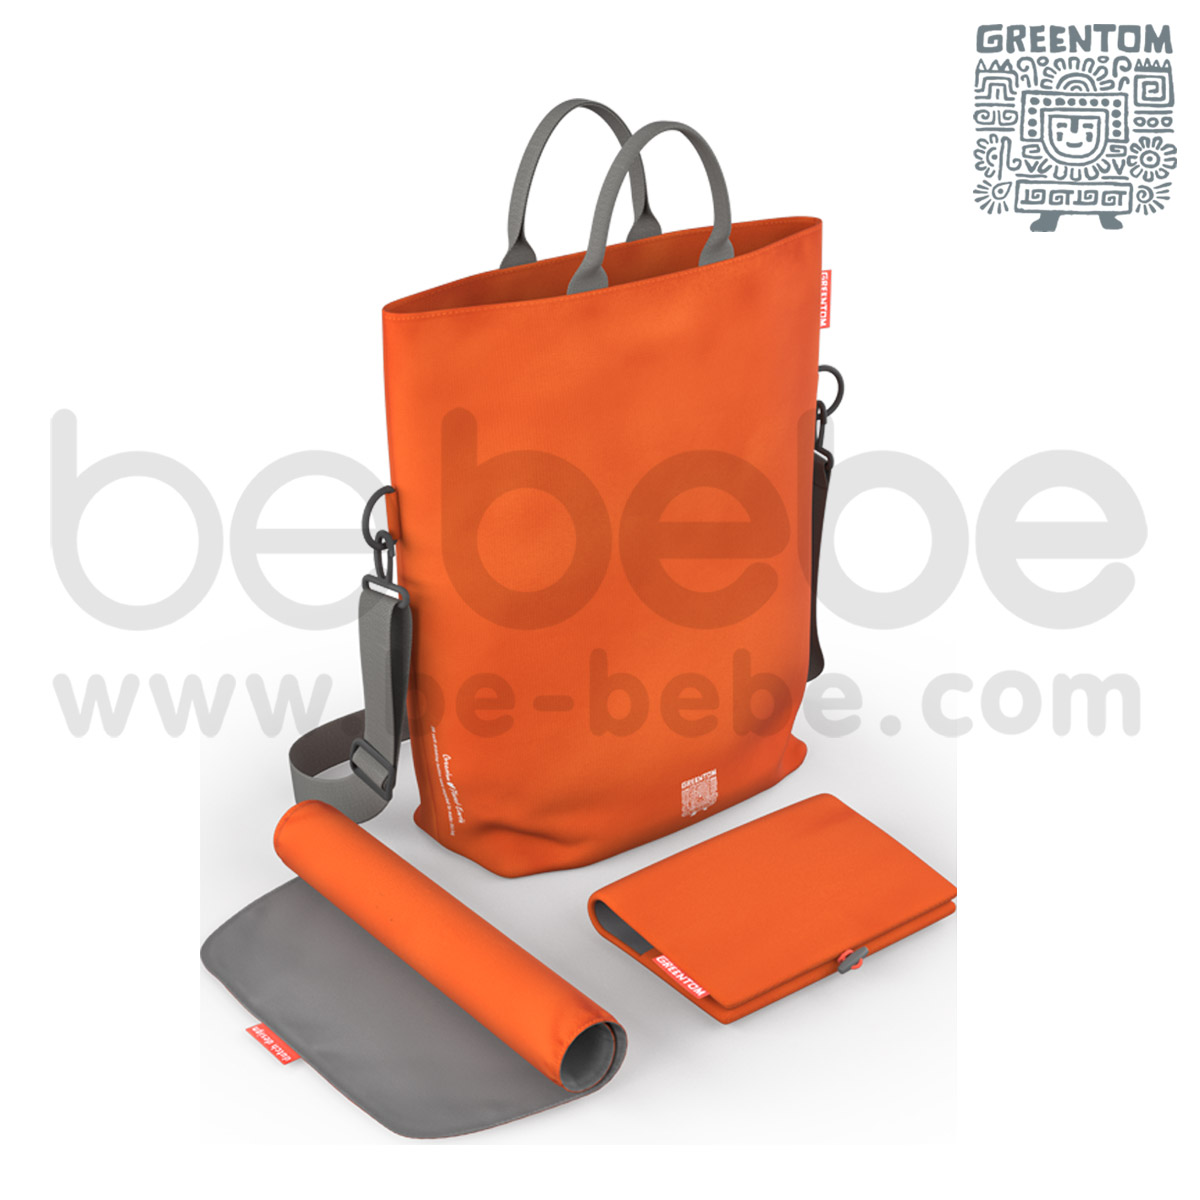 Greentom : Diaper Bag / Orange